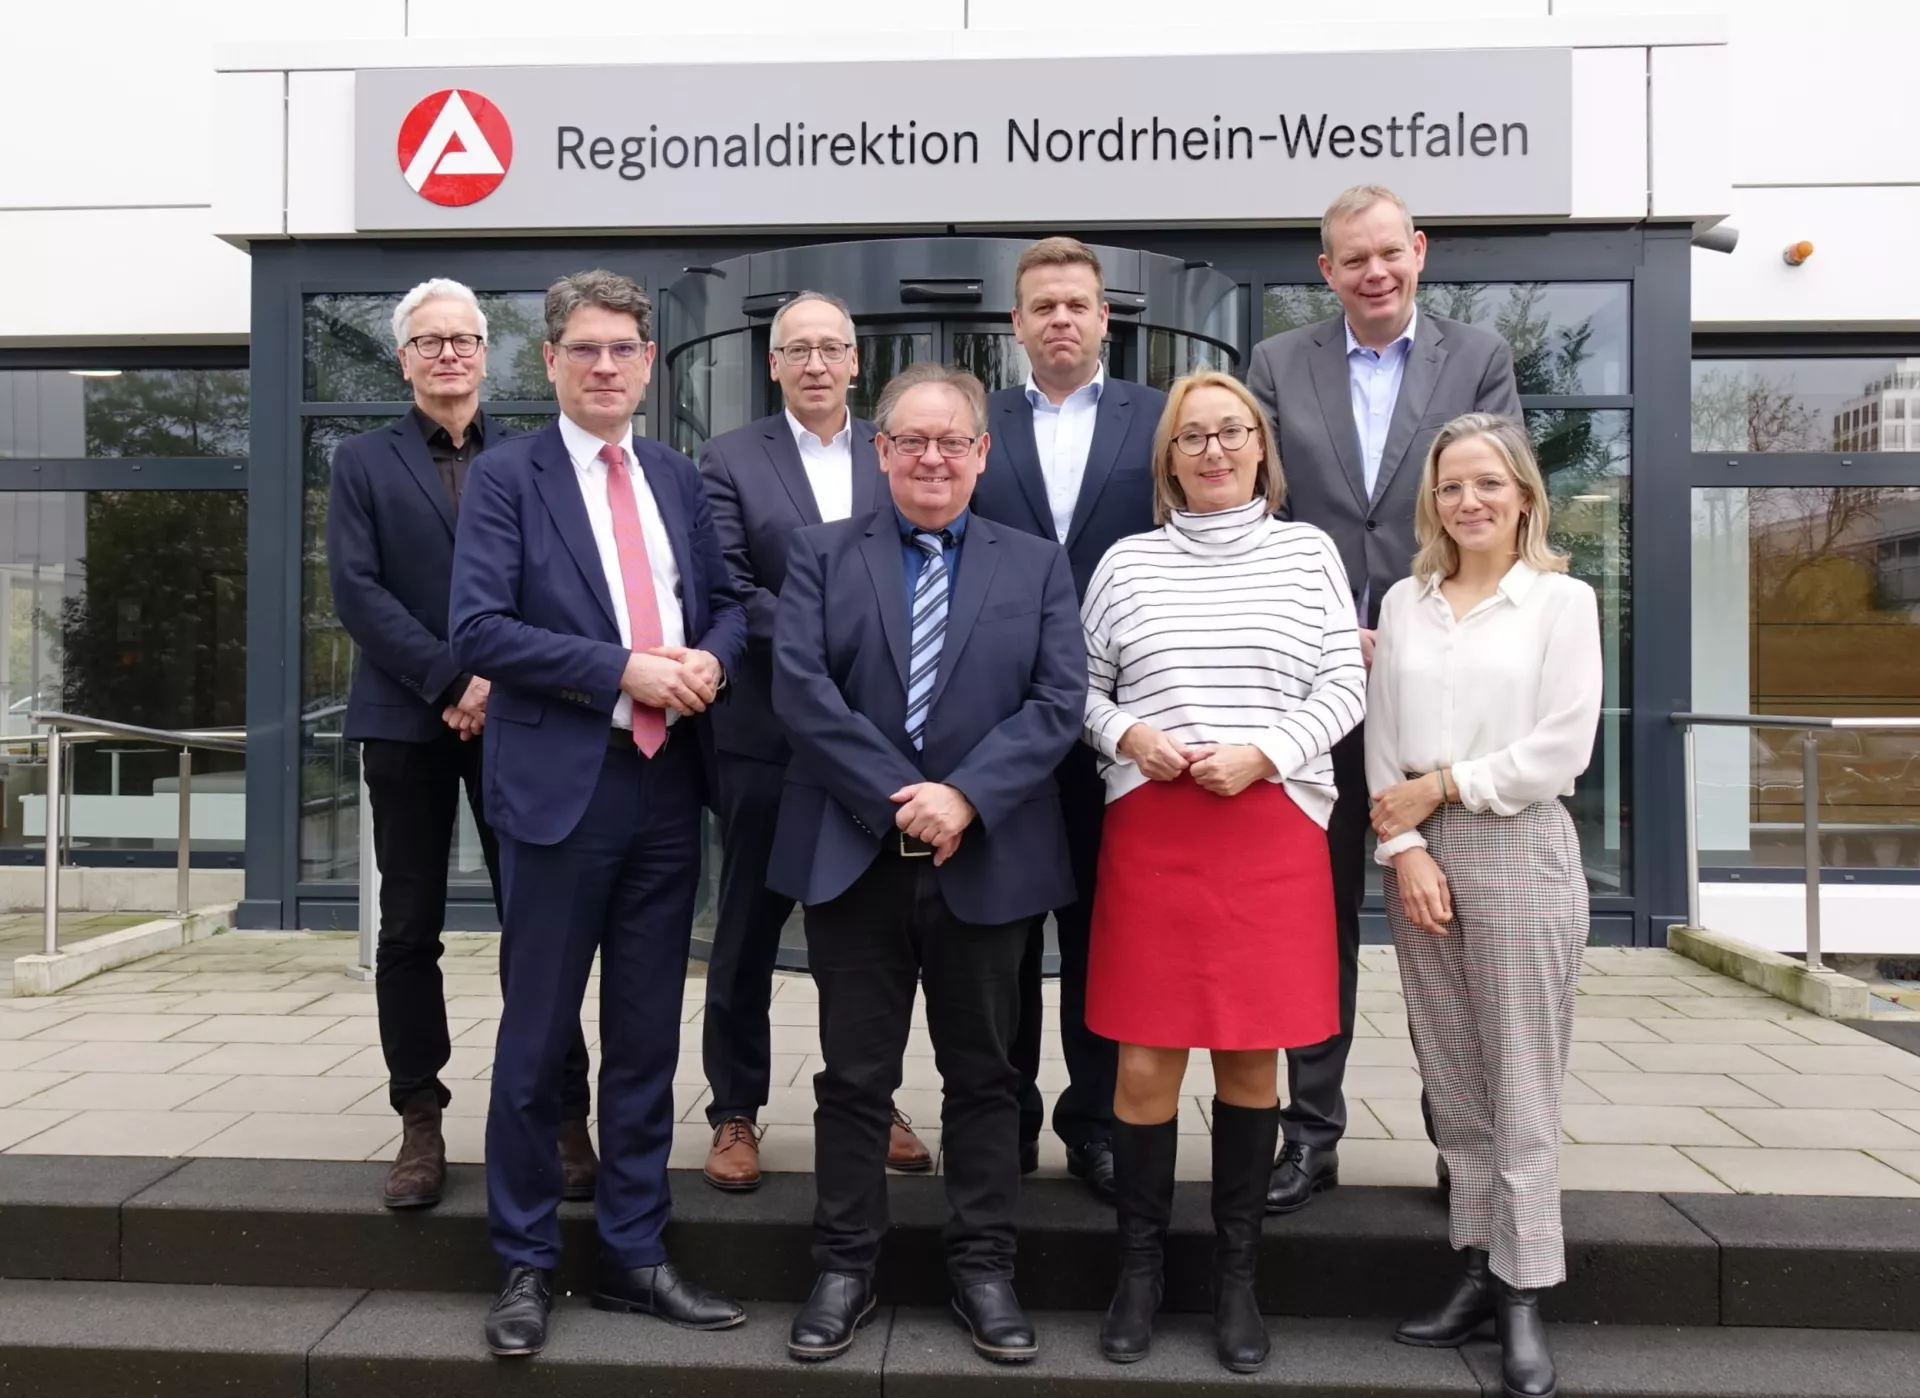 Auf dem Foto stehen acht Personen vor dem Gebäude der Regionaldirektion Nordrhein-Westfalen.